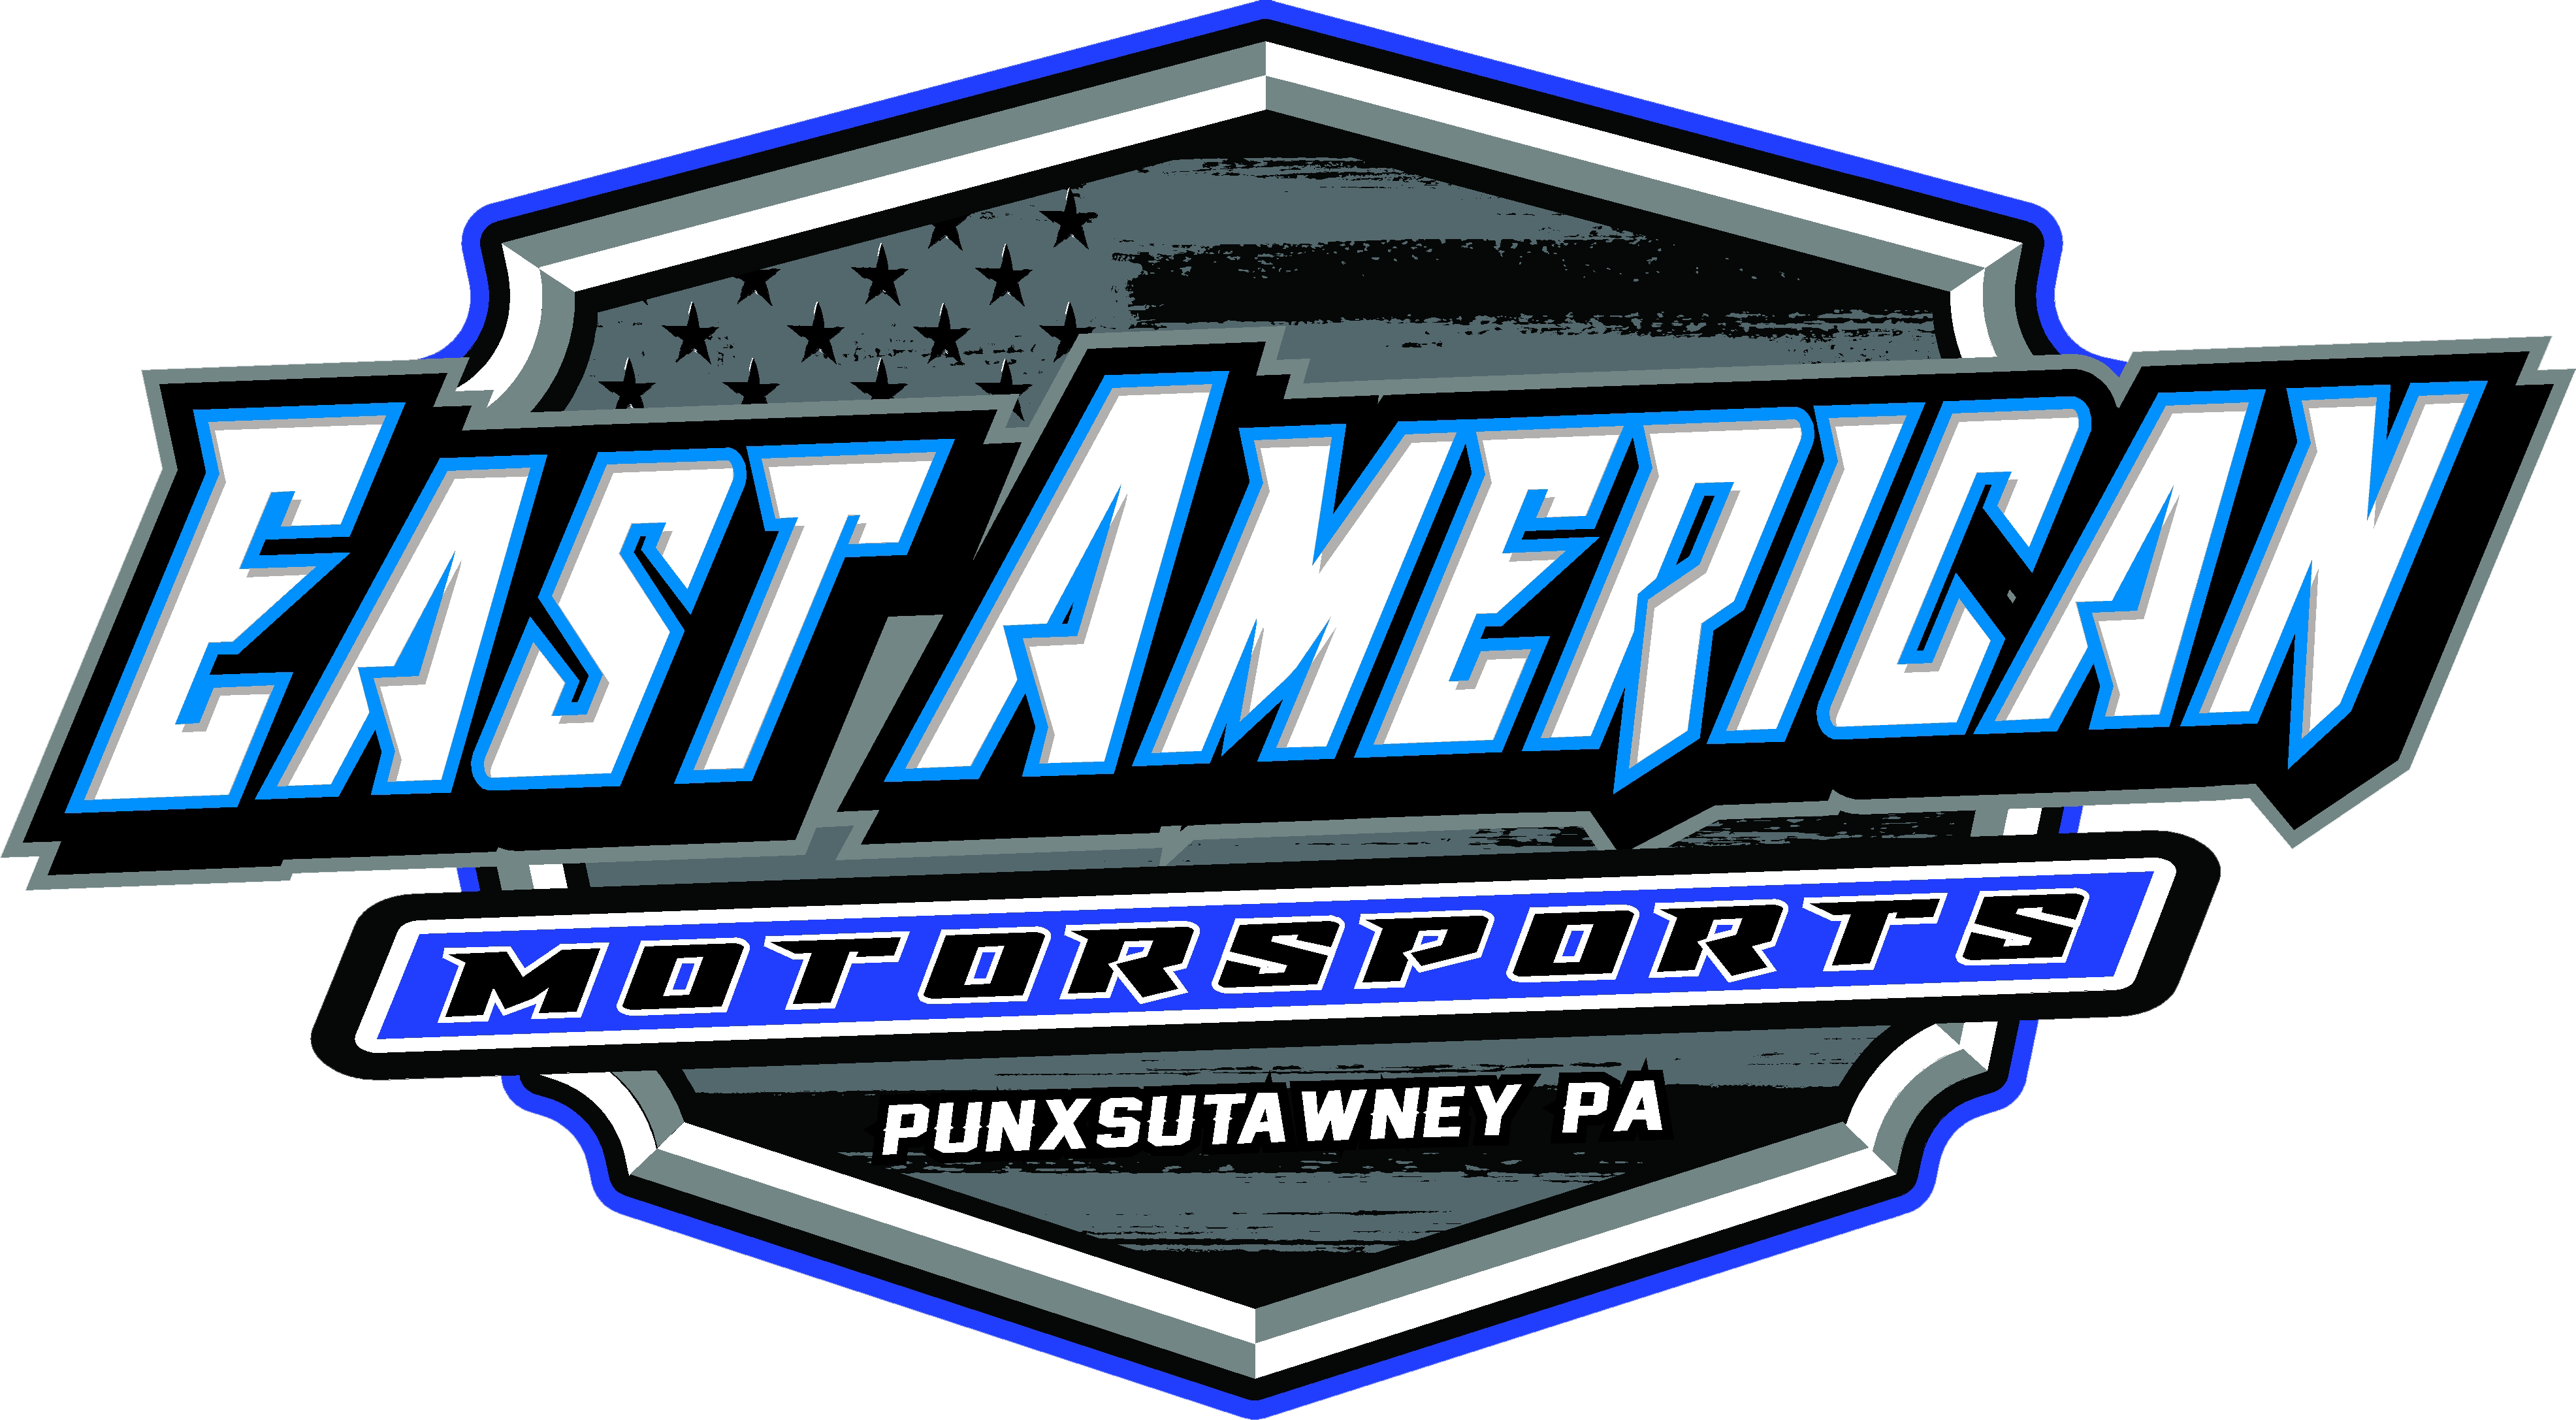 East American Motorsports